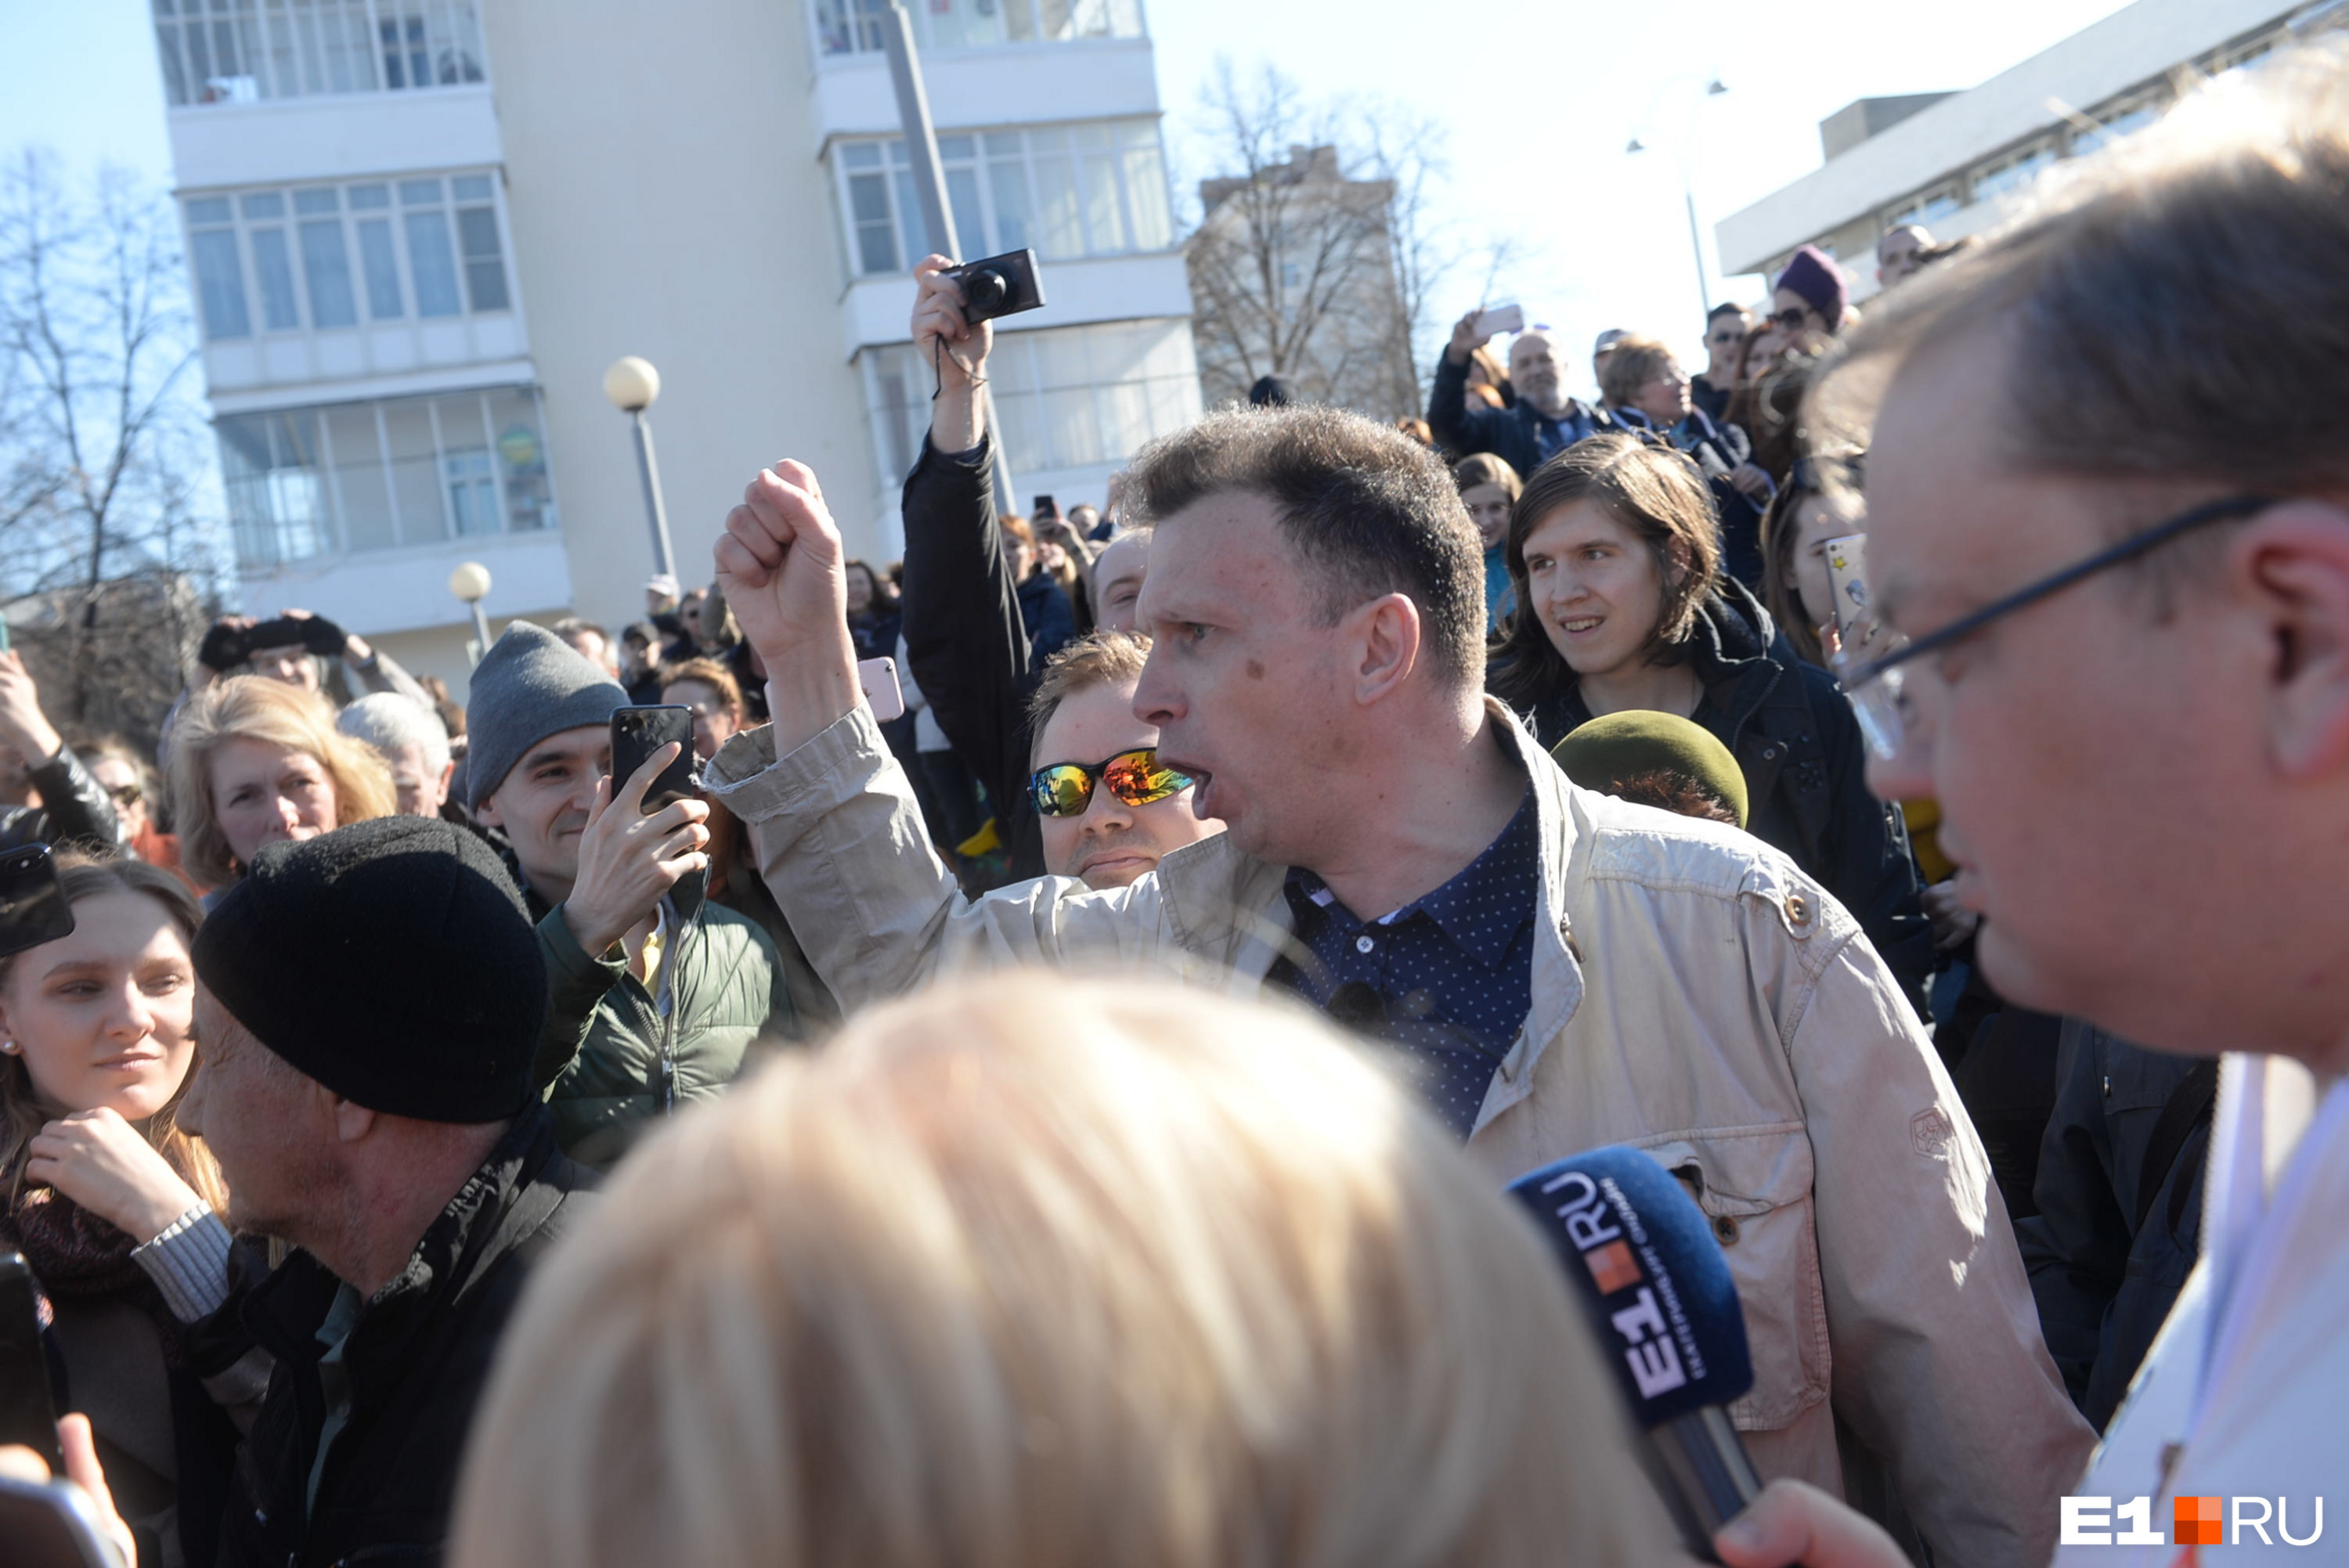 Это Иннокентий Шеремет, которого участники протестной акции выгоняли под крики: «Пошел вон!»